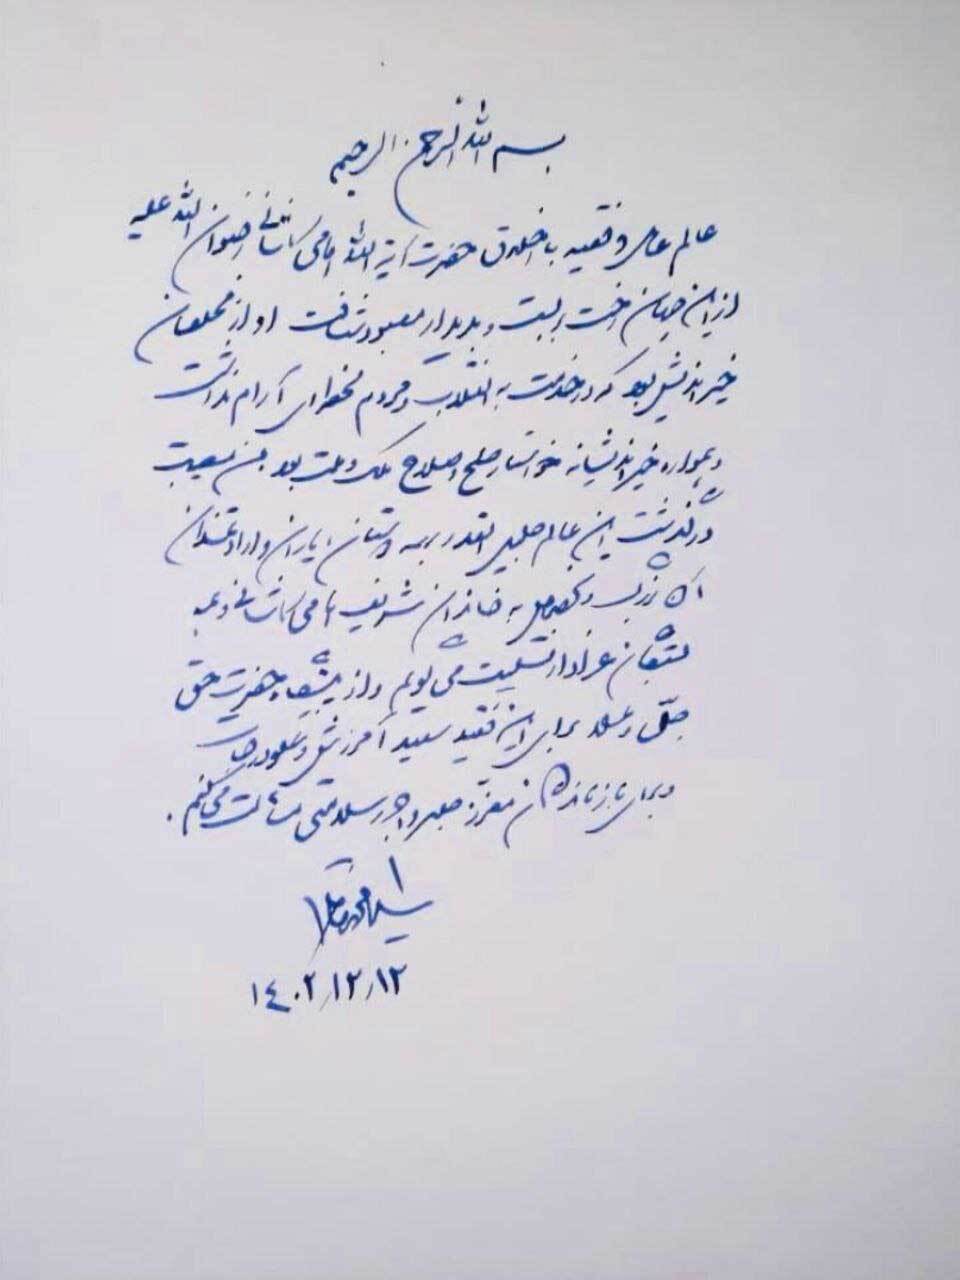 سیدمحمد خاتمی یک پیام صادر کرد